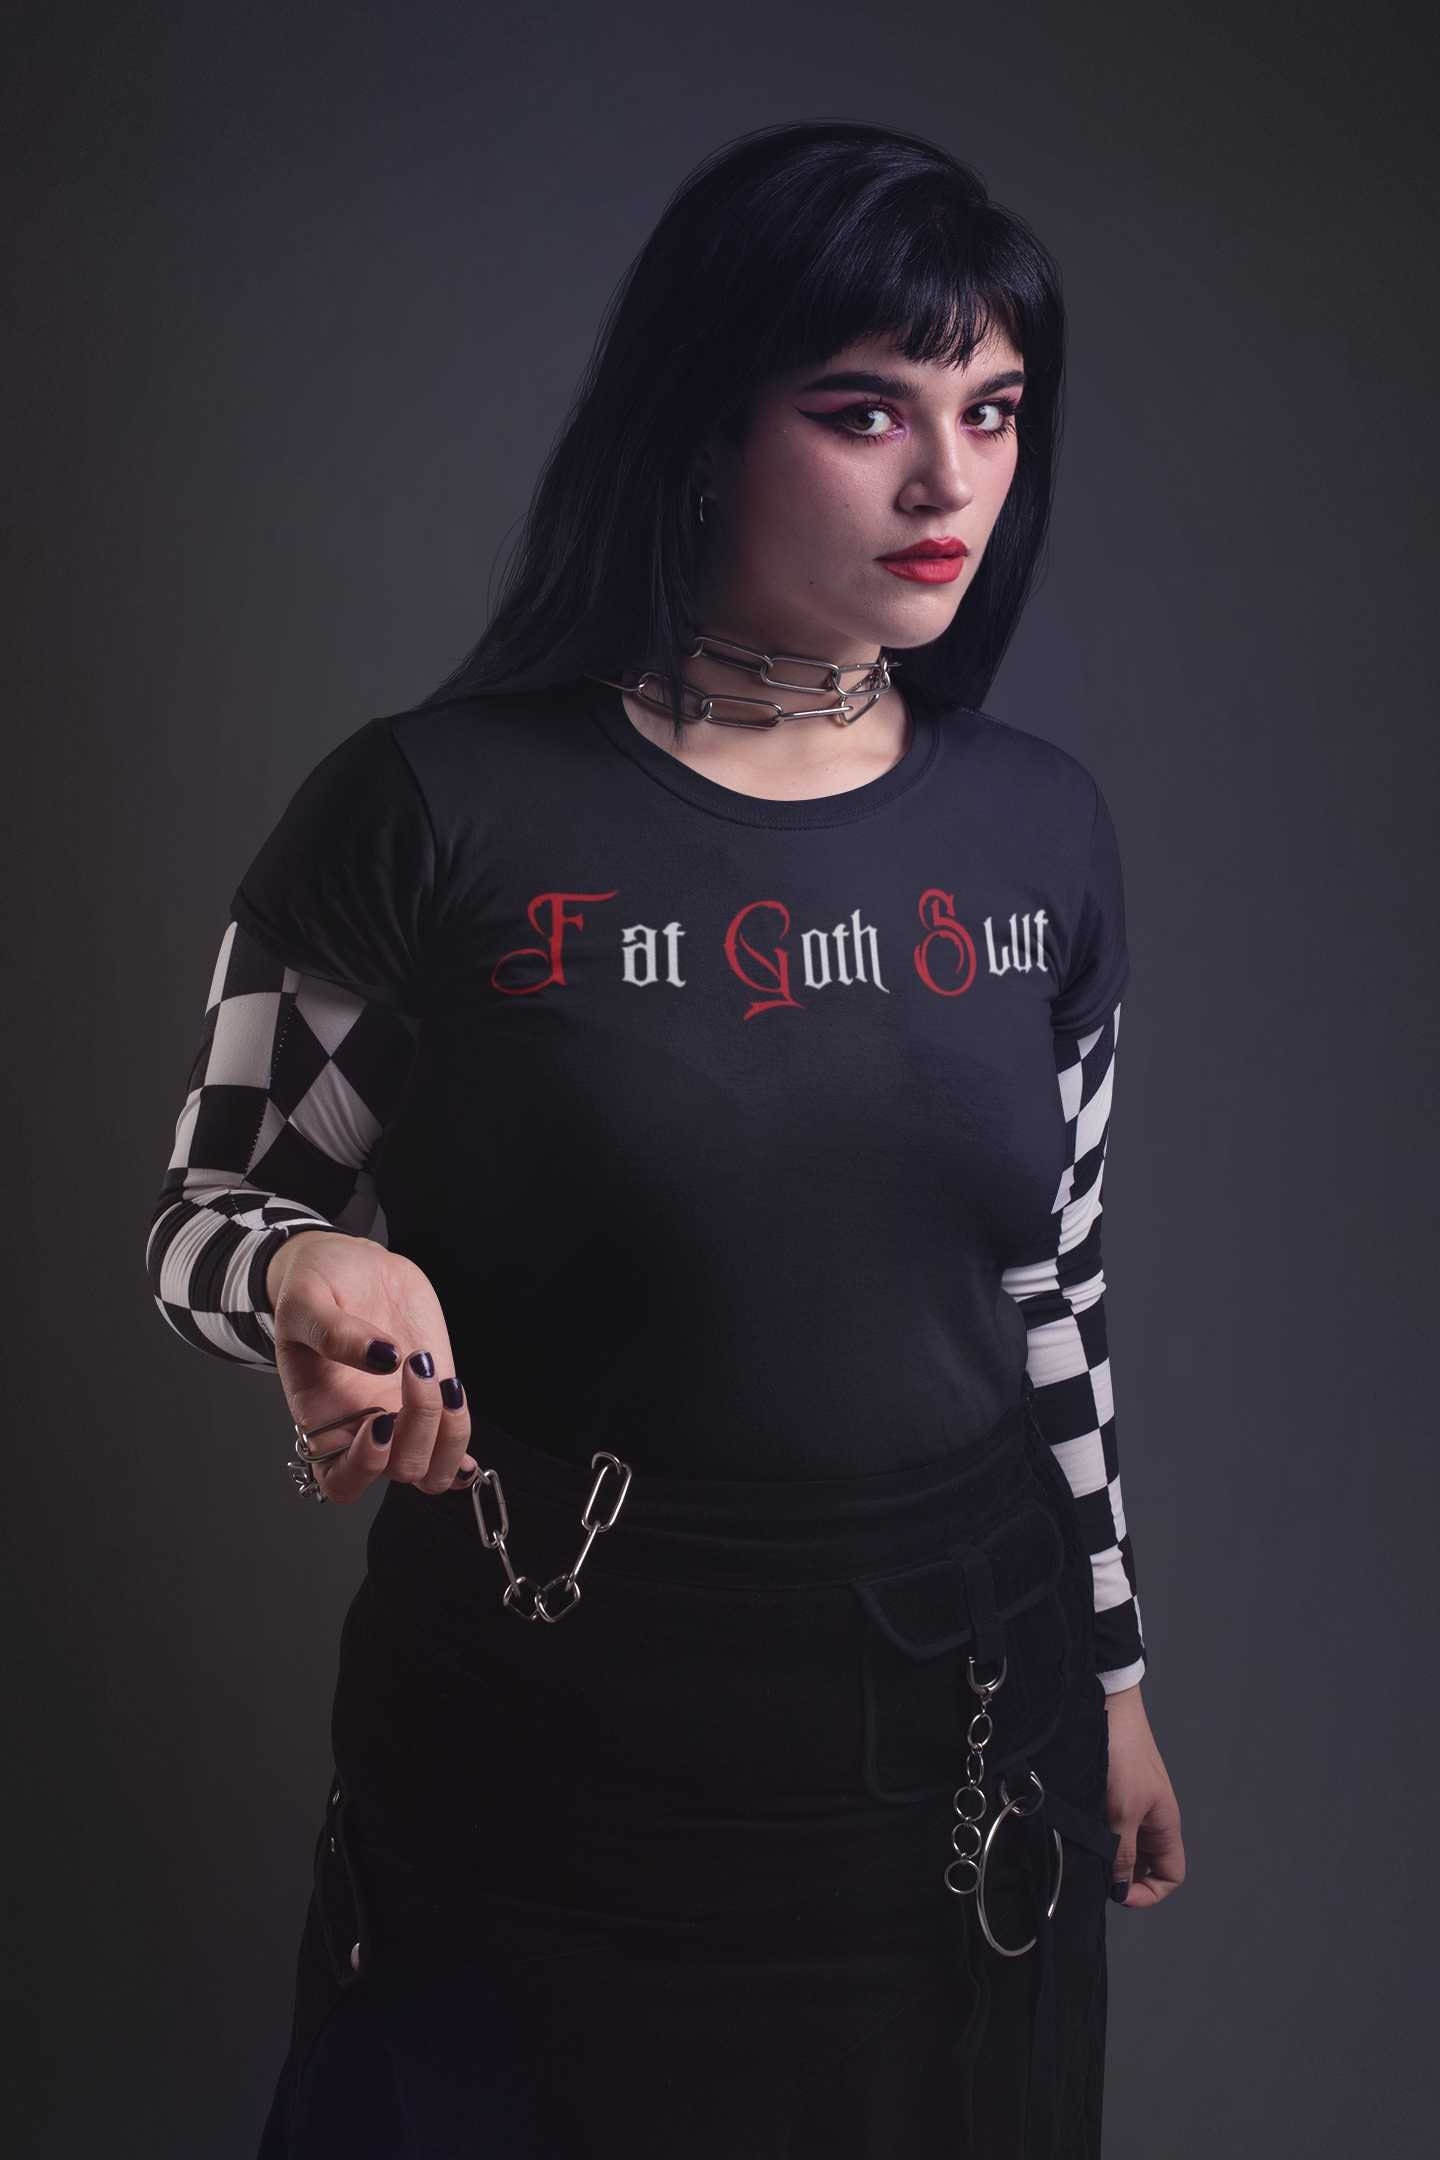 Goth slut